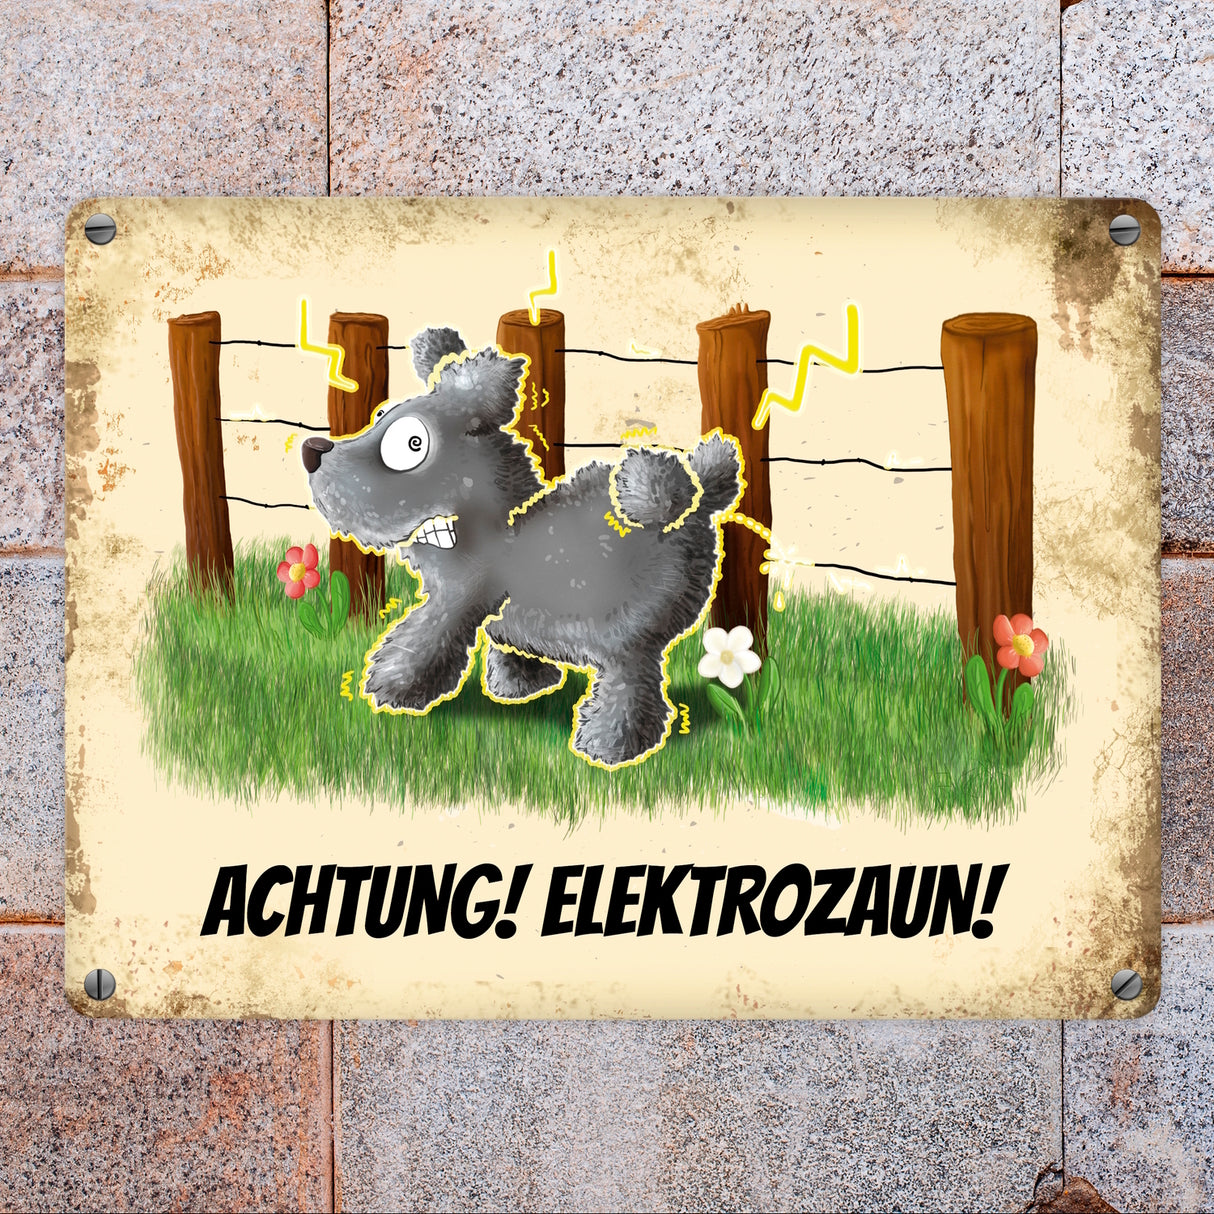 Metallschild mit elektrisierendem Motiv und Spruch: Achtung! Elektrozaun!